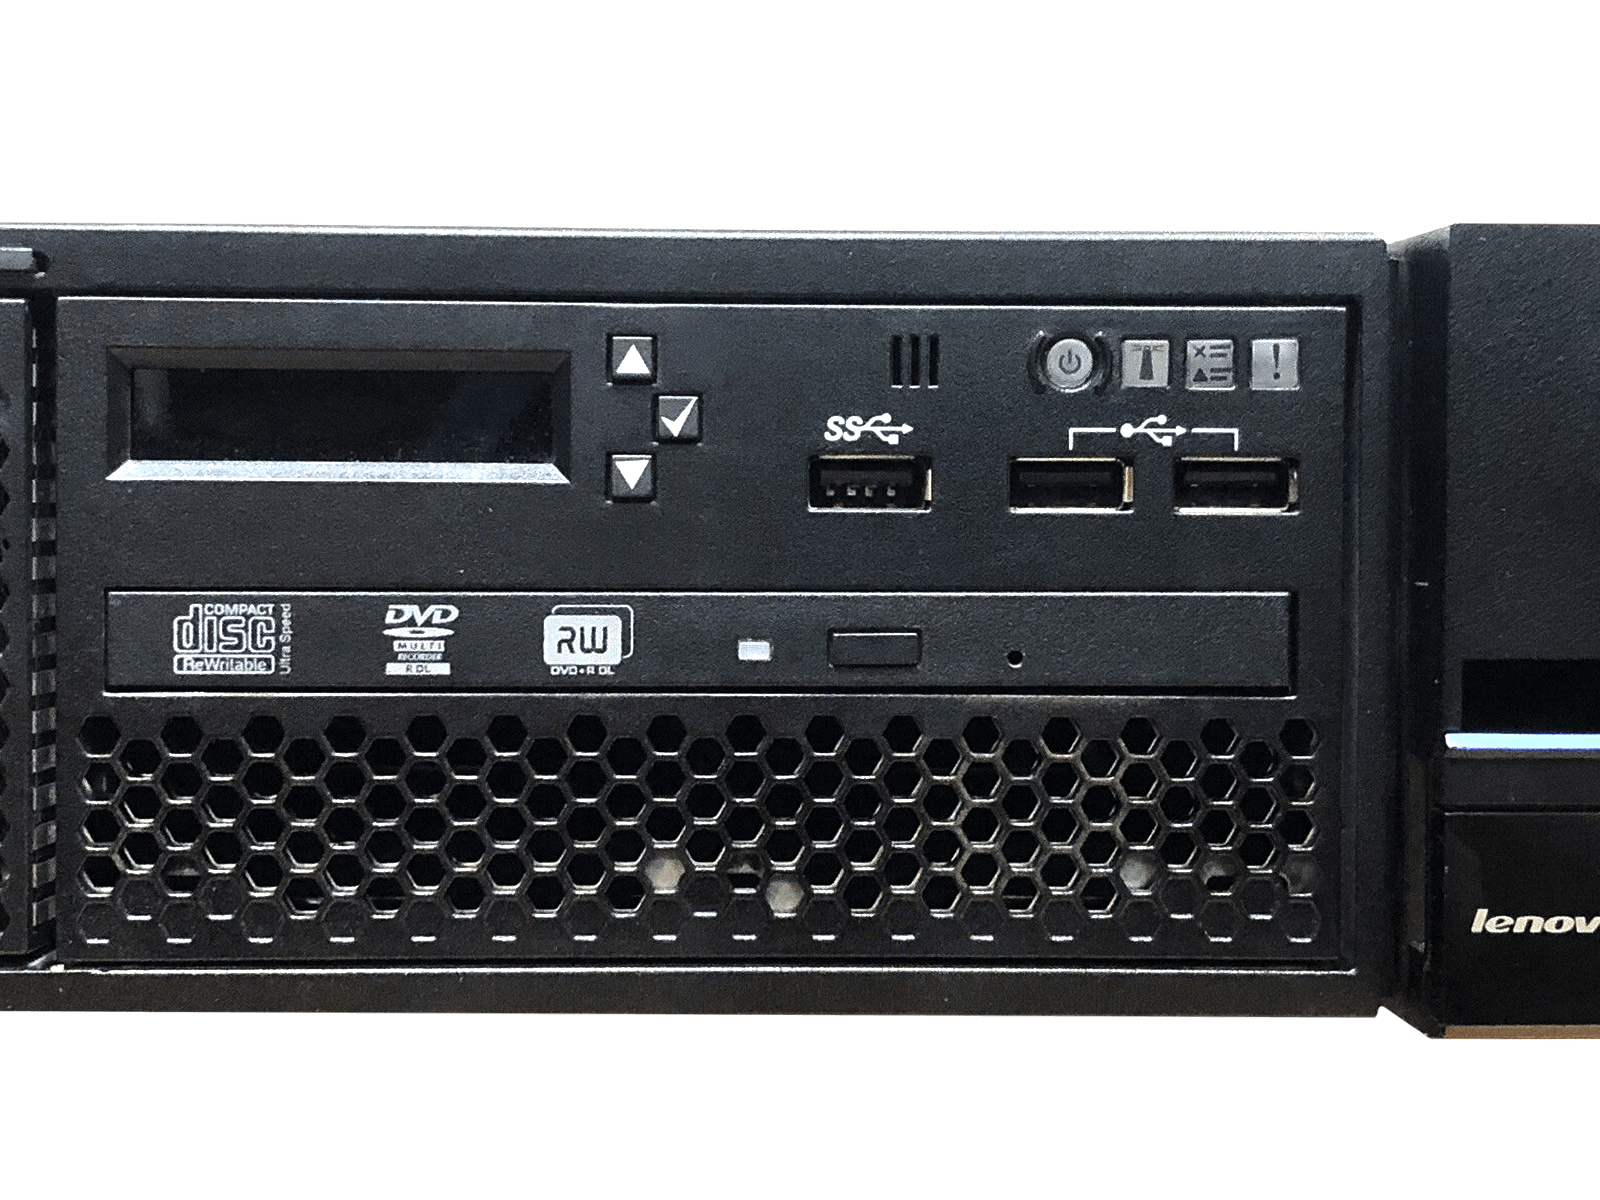 Lenovo x3650 M5 Server 2x E5-2690 v3 12-core 2.6GHz 768GB 8 bay SFF 2x 900W M5210